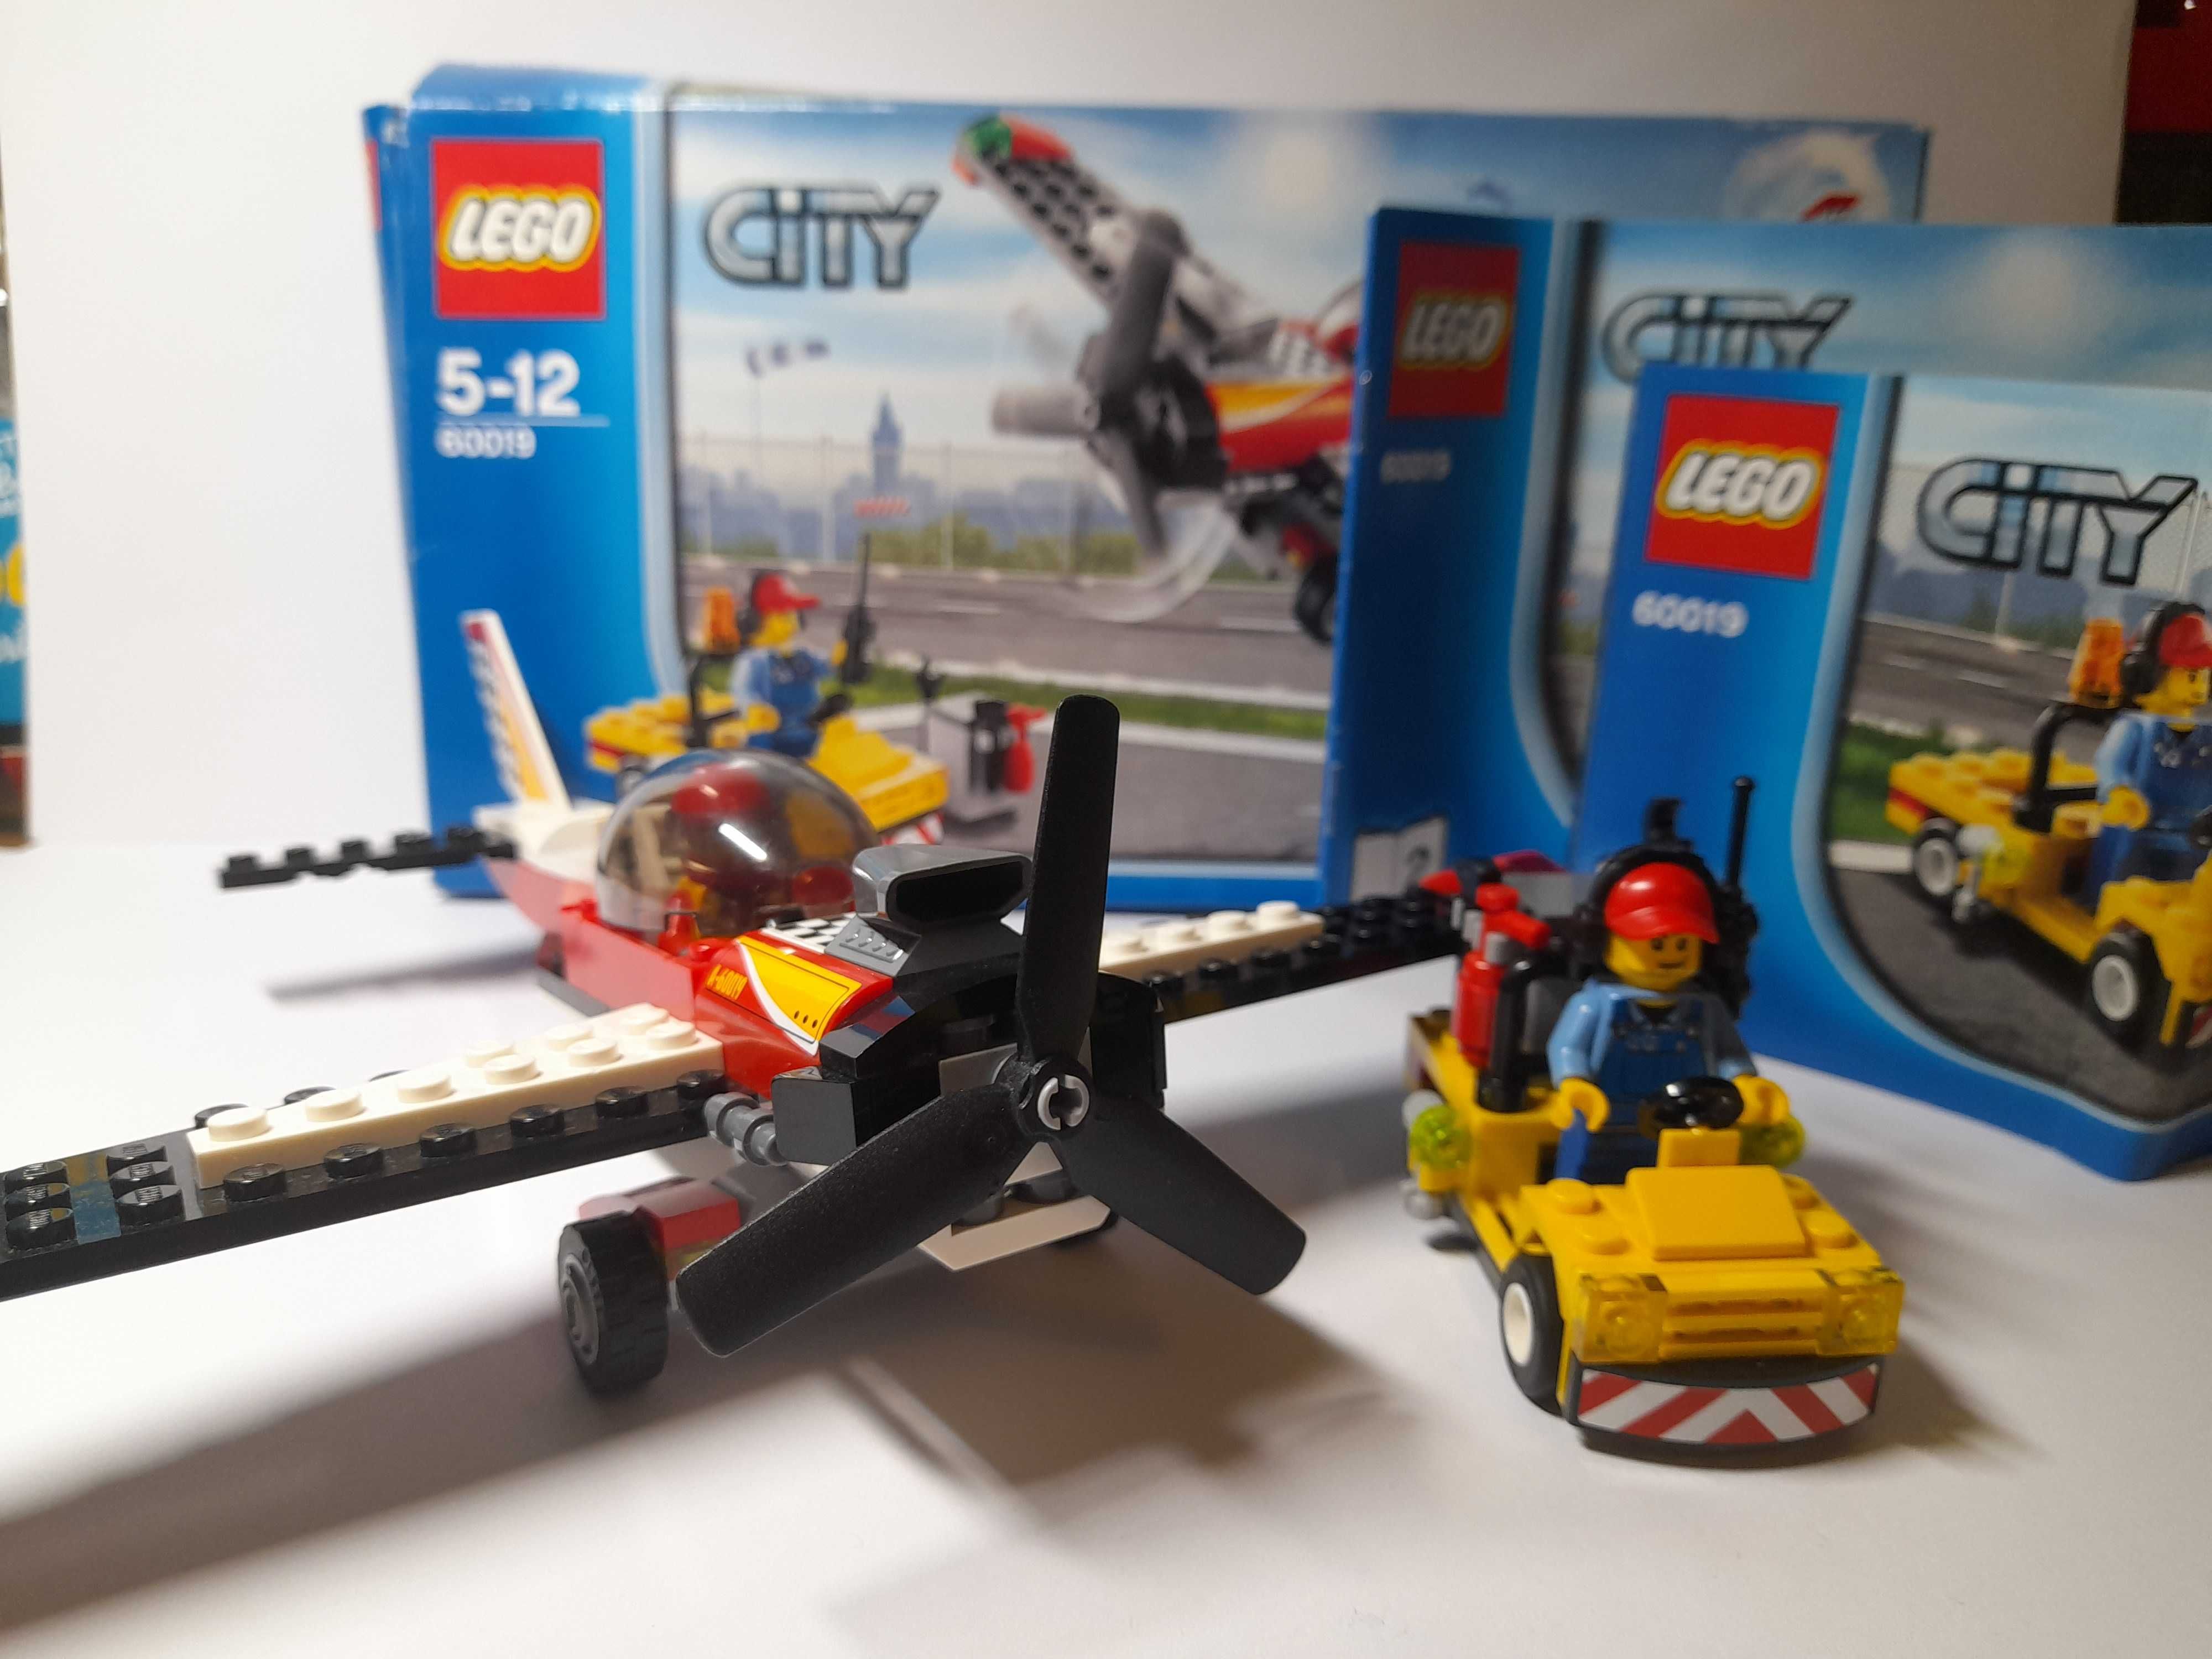 Lego city samolot 60019